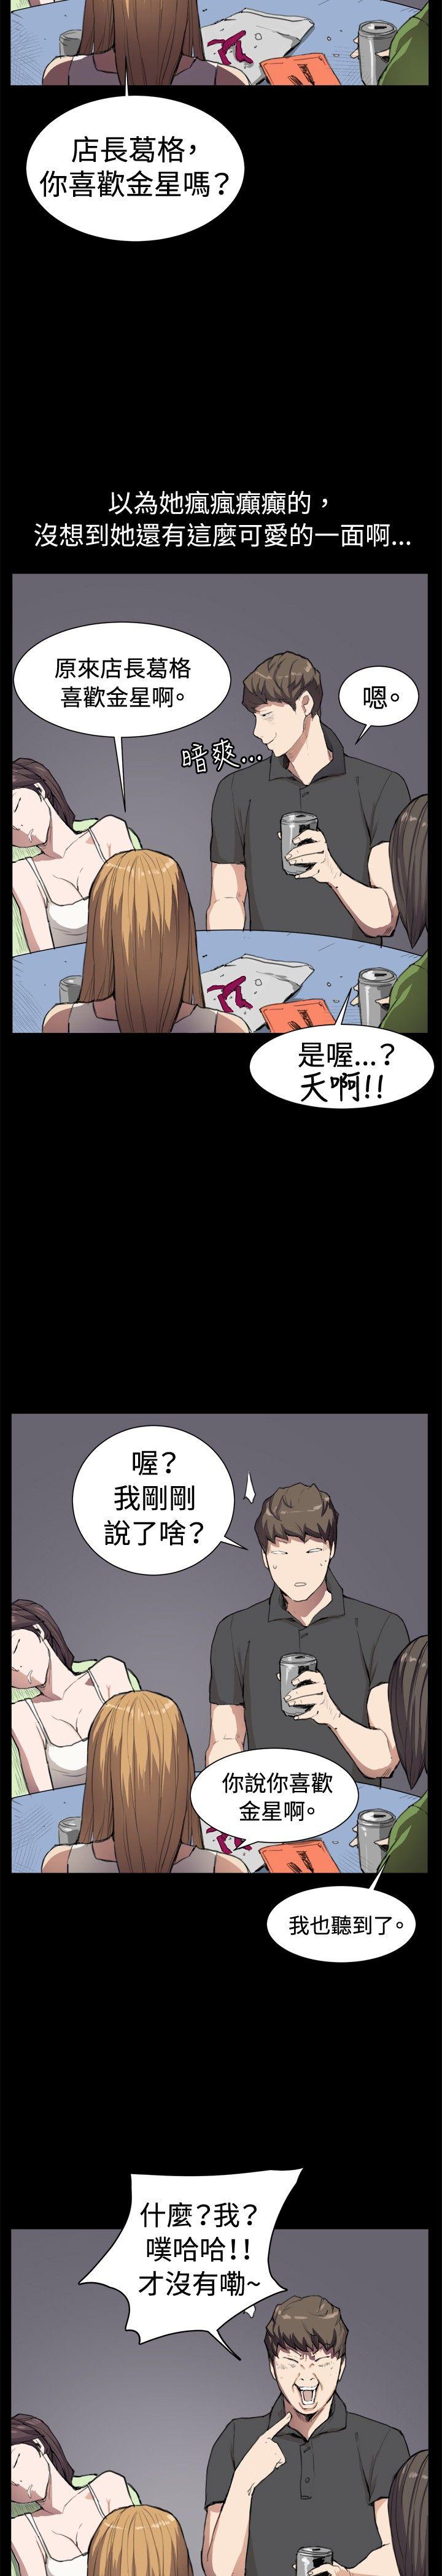 韩国污漫画 深夜便利店 第5话 10